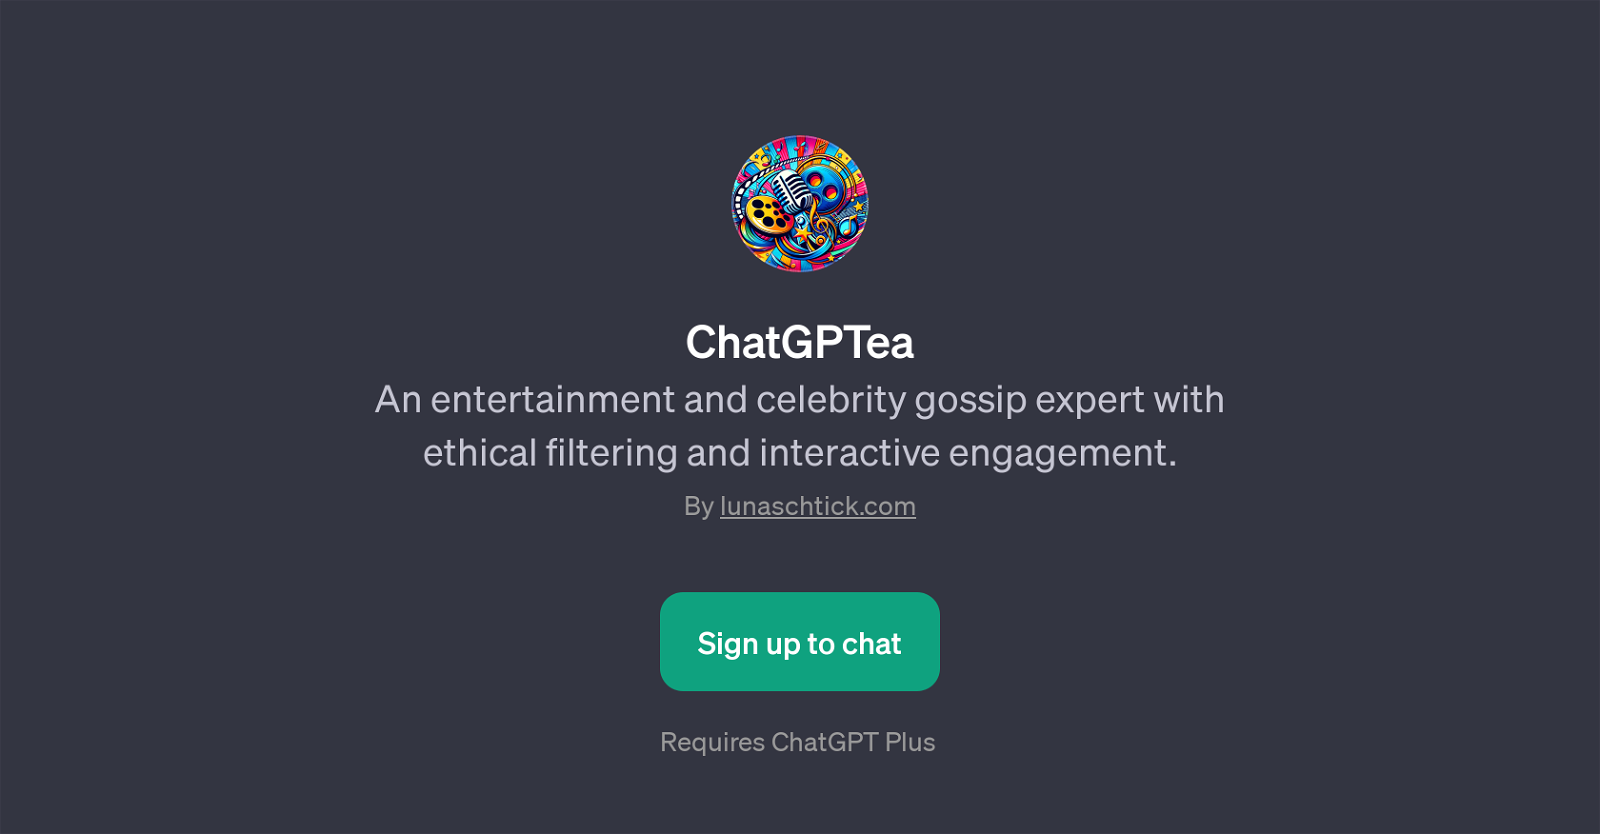 ChatGPTea website